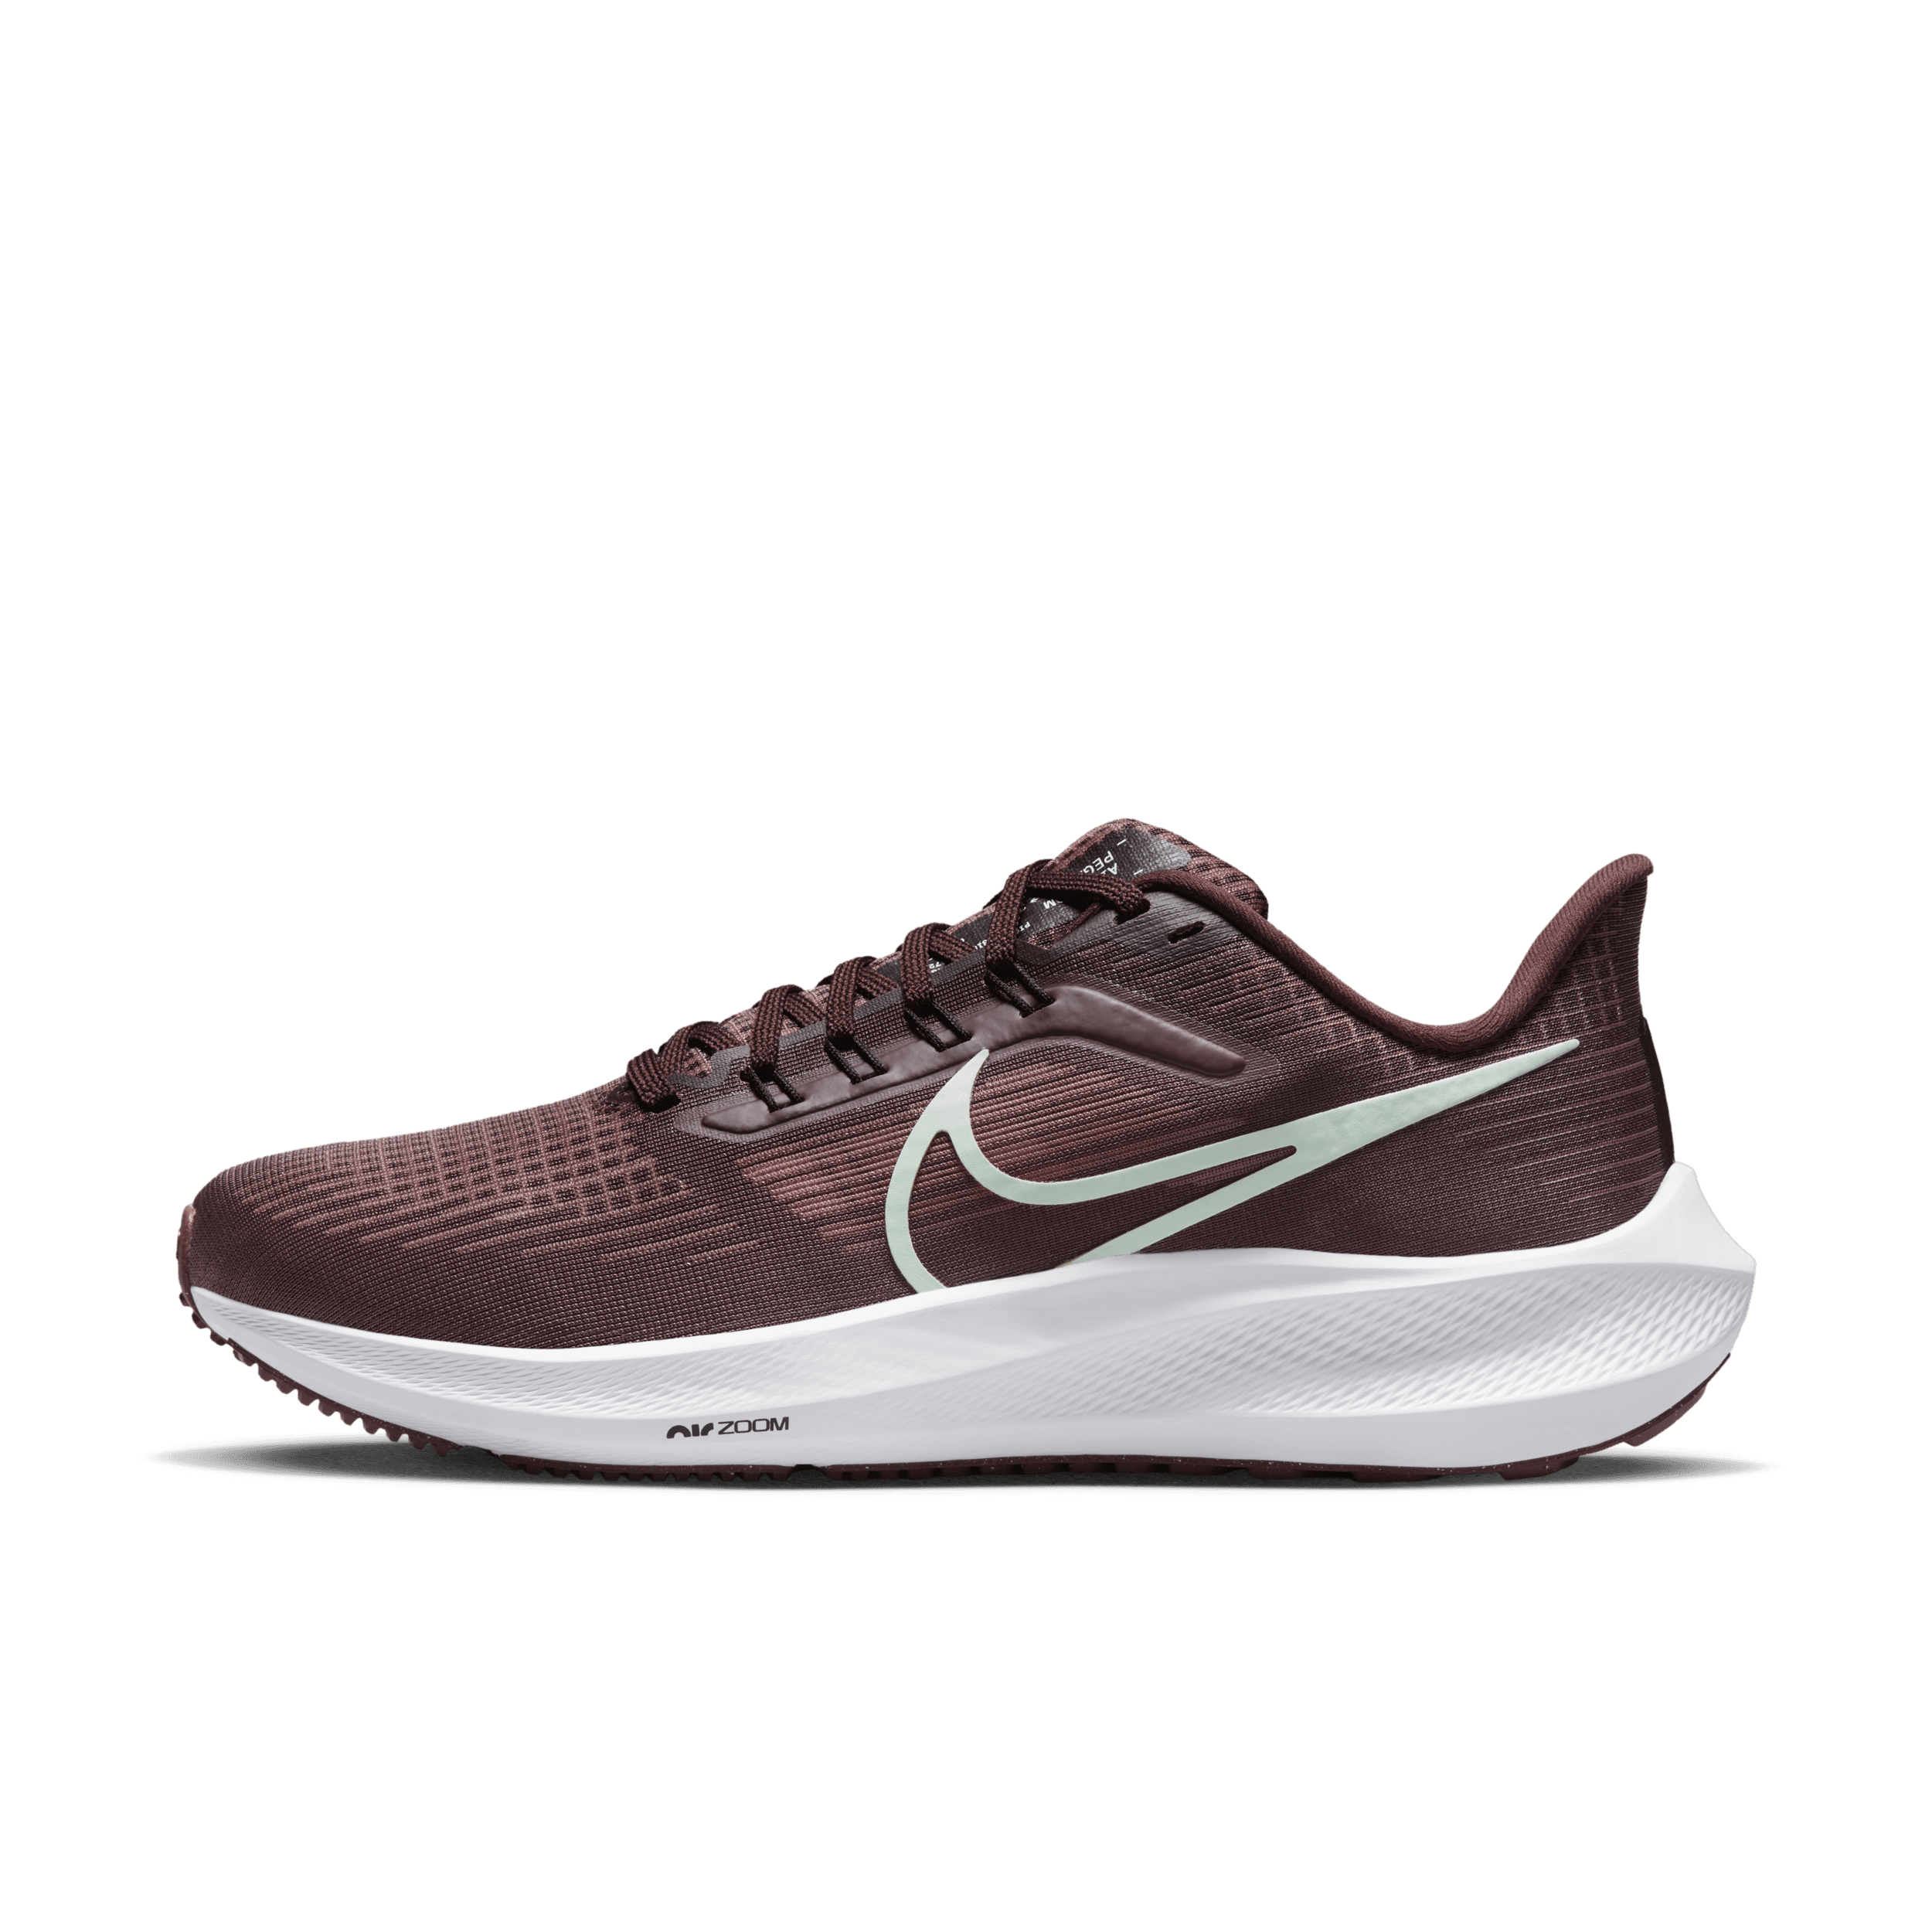 Precios de Nike 39 - Ofertas para comprar y outlet | Runnea